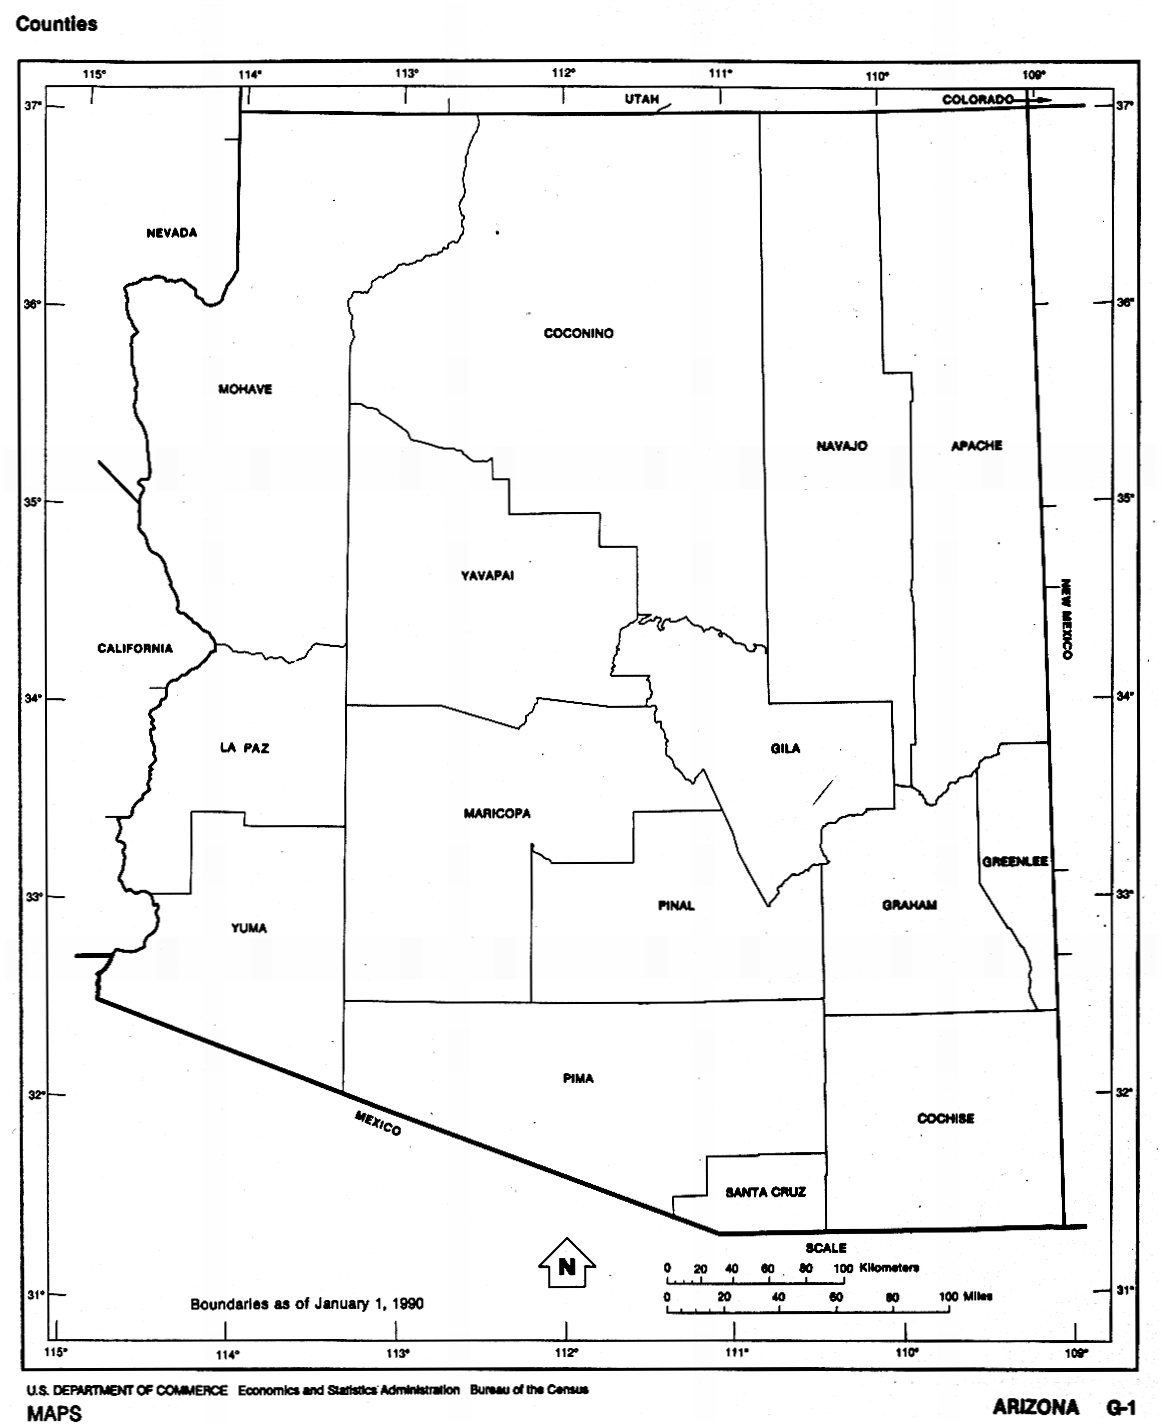 Mapa Blanco y Negro de Arizona, Estados Unidos